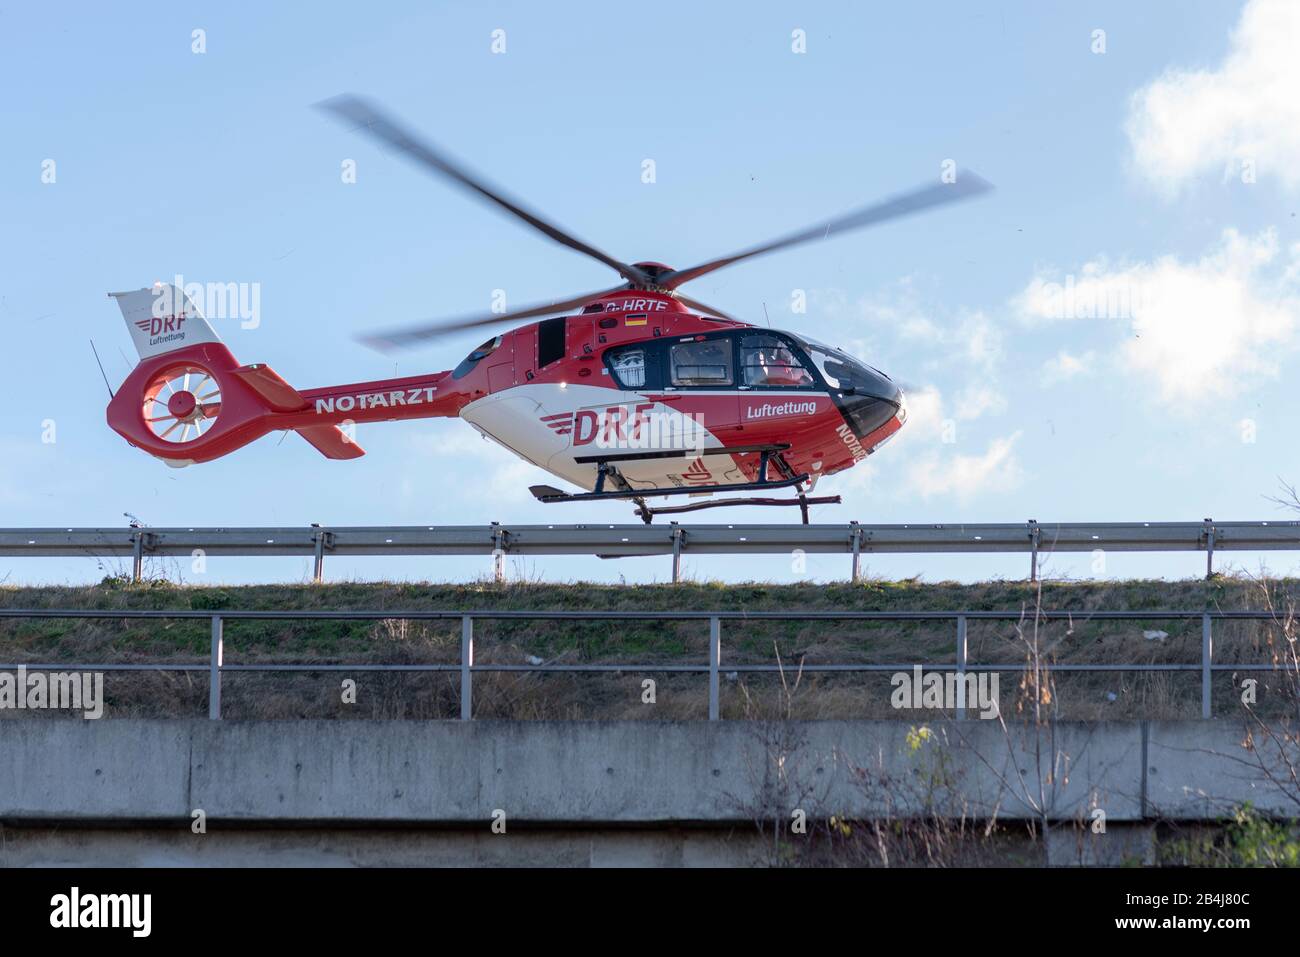 Allemagne, Saxe-Anhalt, Magdeburg, hélicoptère de sauvetage Christoph 36, utilisation sur l'autoroute 2 près de Magdeburg. L'hélicoptère appartient à la Fondation allemande de sauvetage aérien (DRF). Banque D'Images